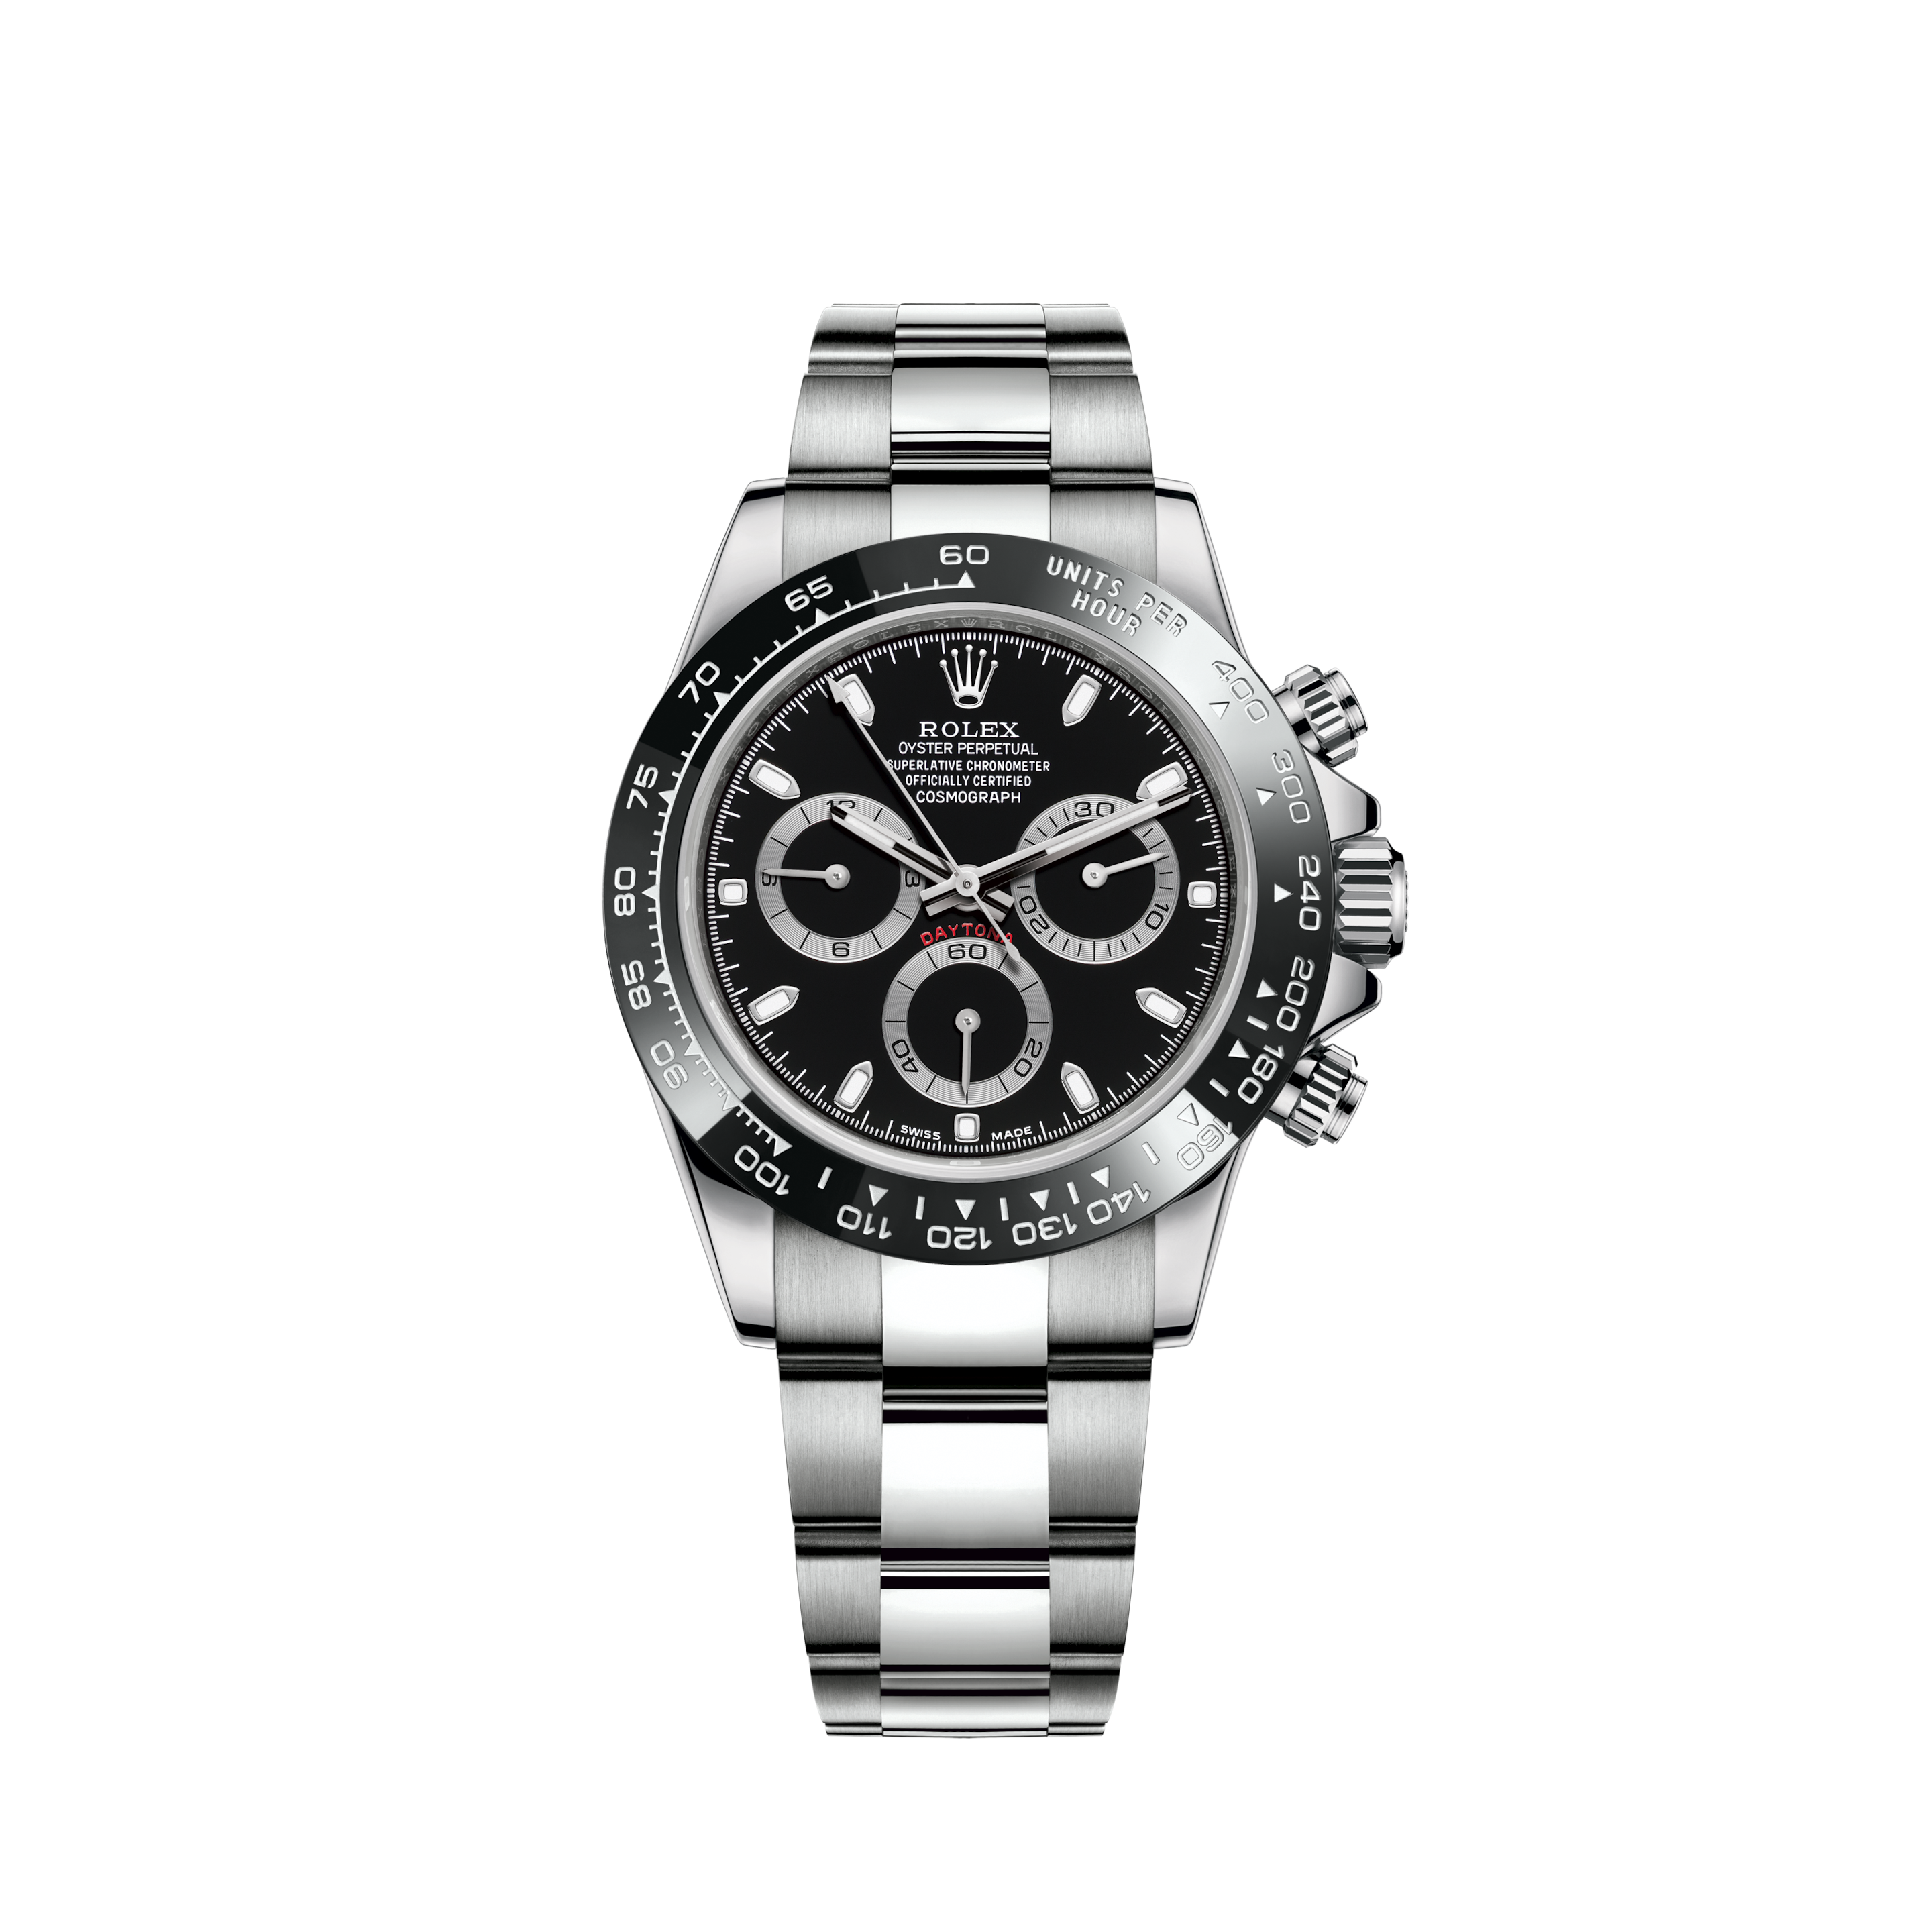 Rolex Datejust 26mm Steel Jubilee Diamond Watch with Light Pearl DialRolex Datejust 26mm Steel Jubilee Diamond Watch with Natural Pearl (Light) Dial